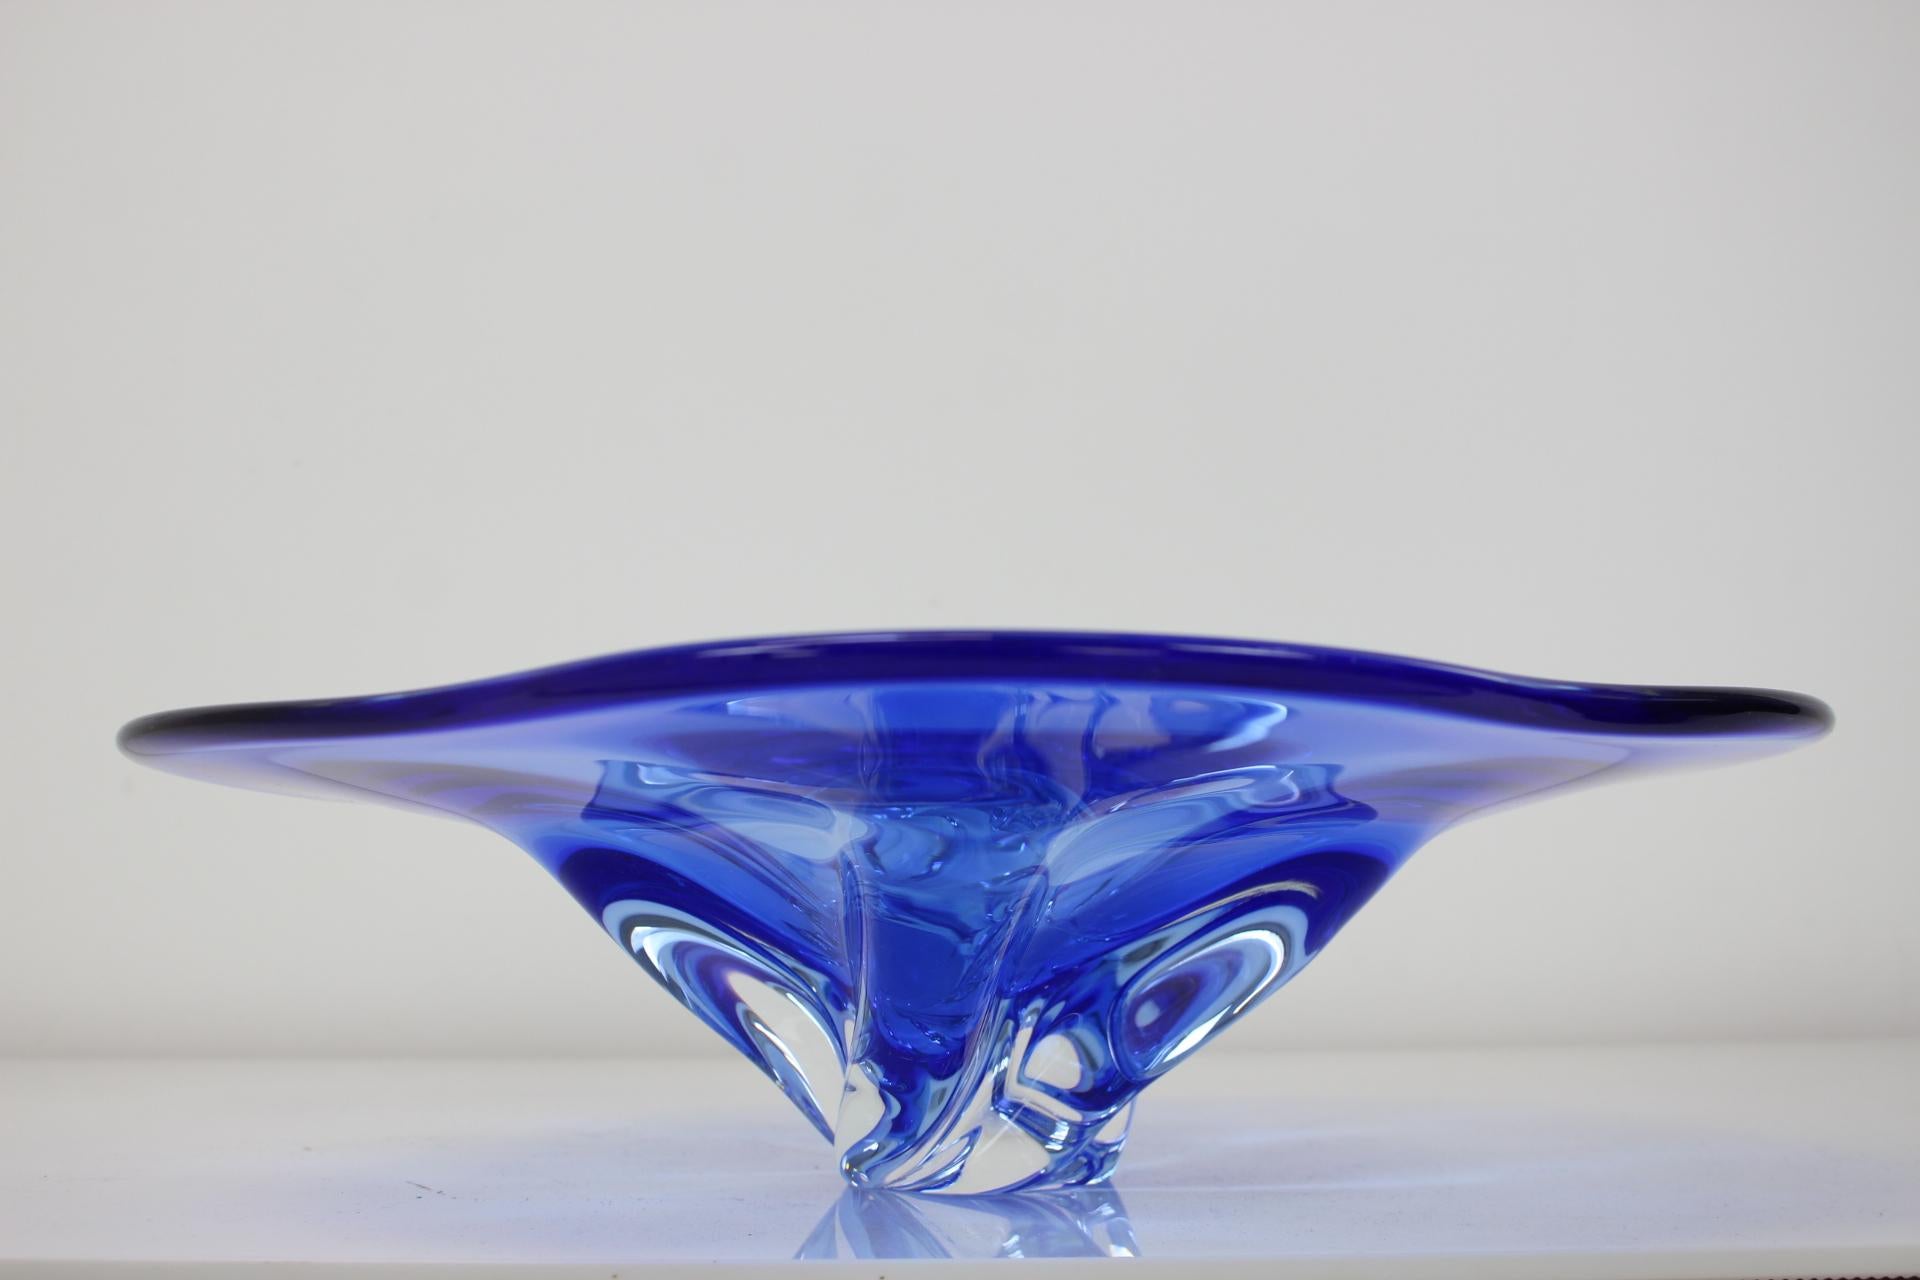 Mid-20th Century Czech Art Glass Bowl by Josef Hospodka for Chribska Glassworks, 1960's For Sale